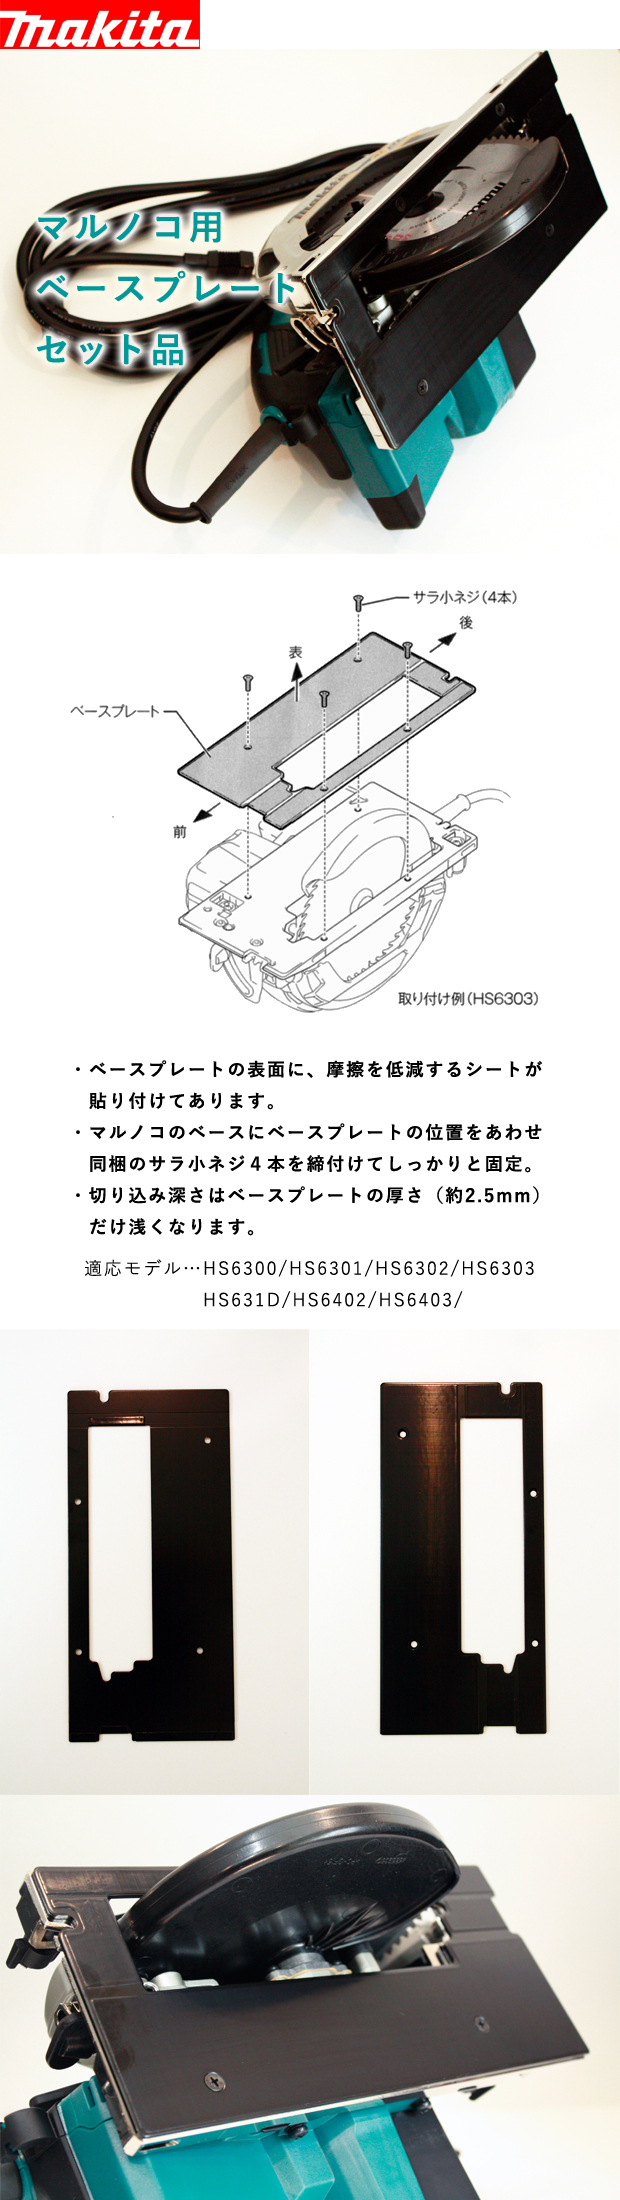 マキタ マルノコ用ベースプレートセット品 A-66101